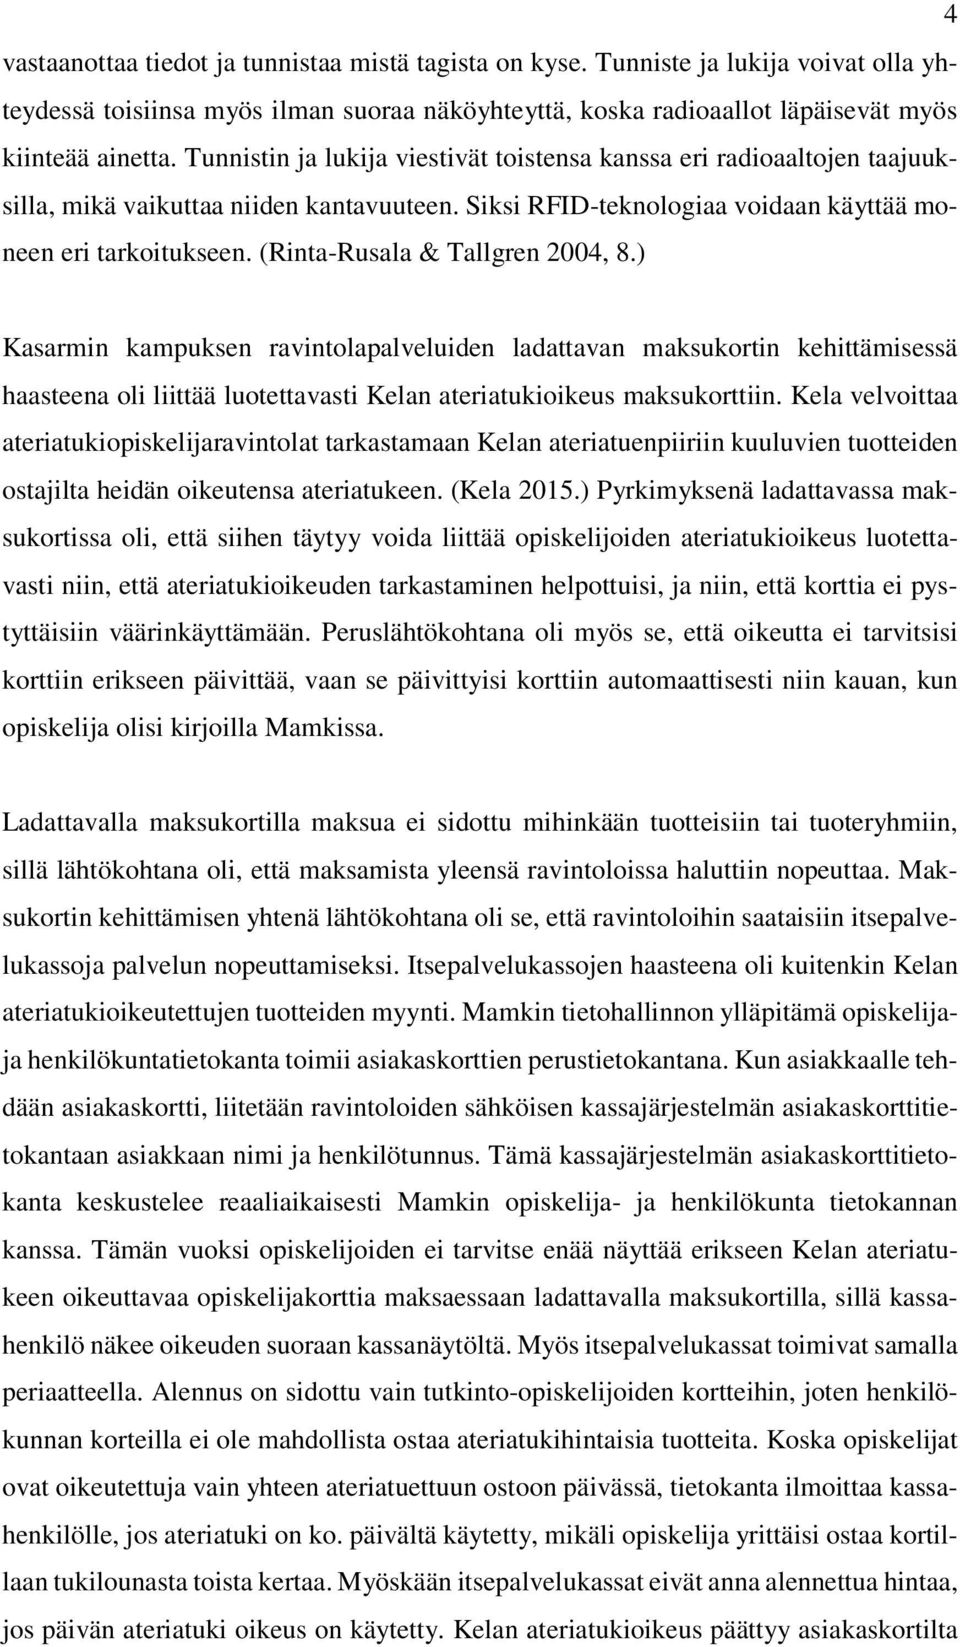 (Rinta-Rusala & Tallgren 2004, 8.) Kasarmin kampuksen ravintolapalveluiden ladattavan maksukortin kehittämisessä haasteena oli liittää luotettavasti Kelan ateriatukioikeus maksukorttiin.